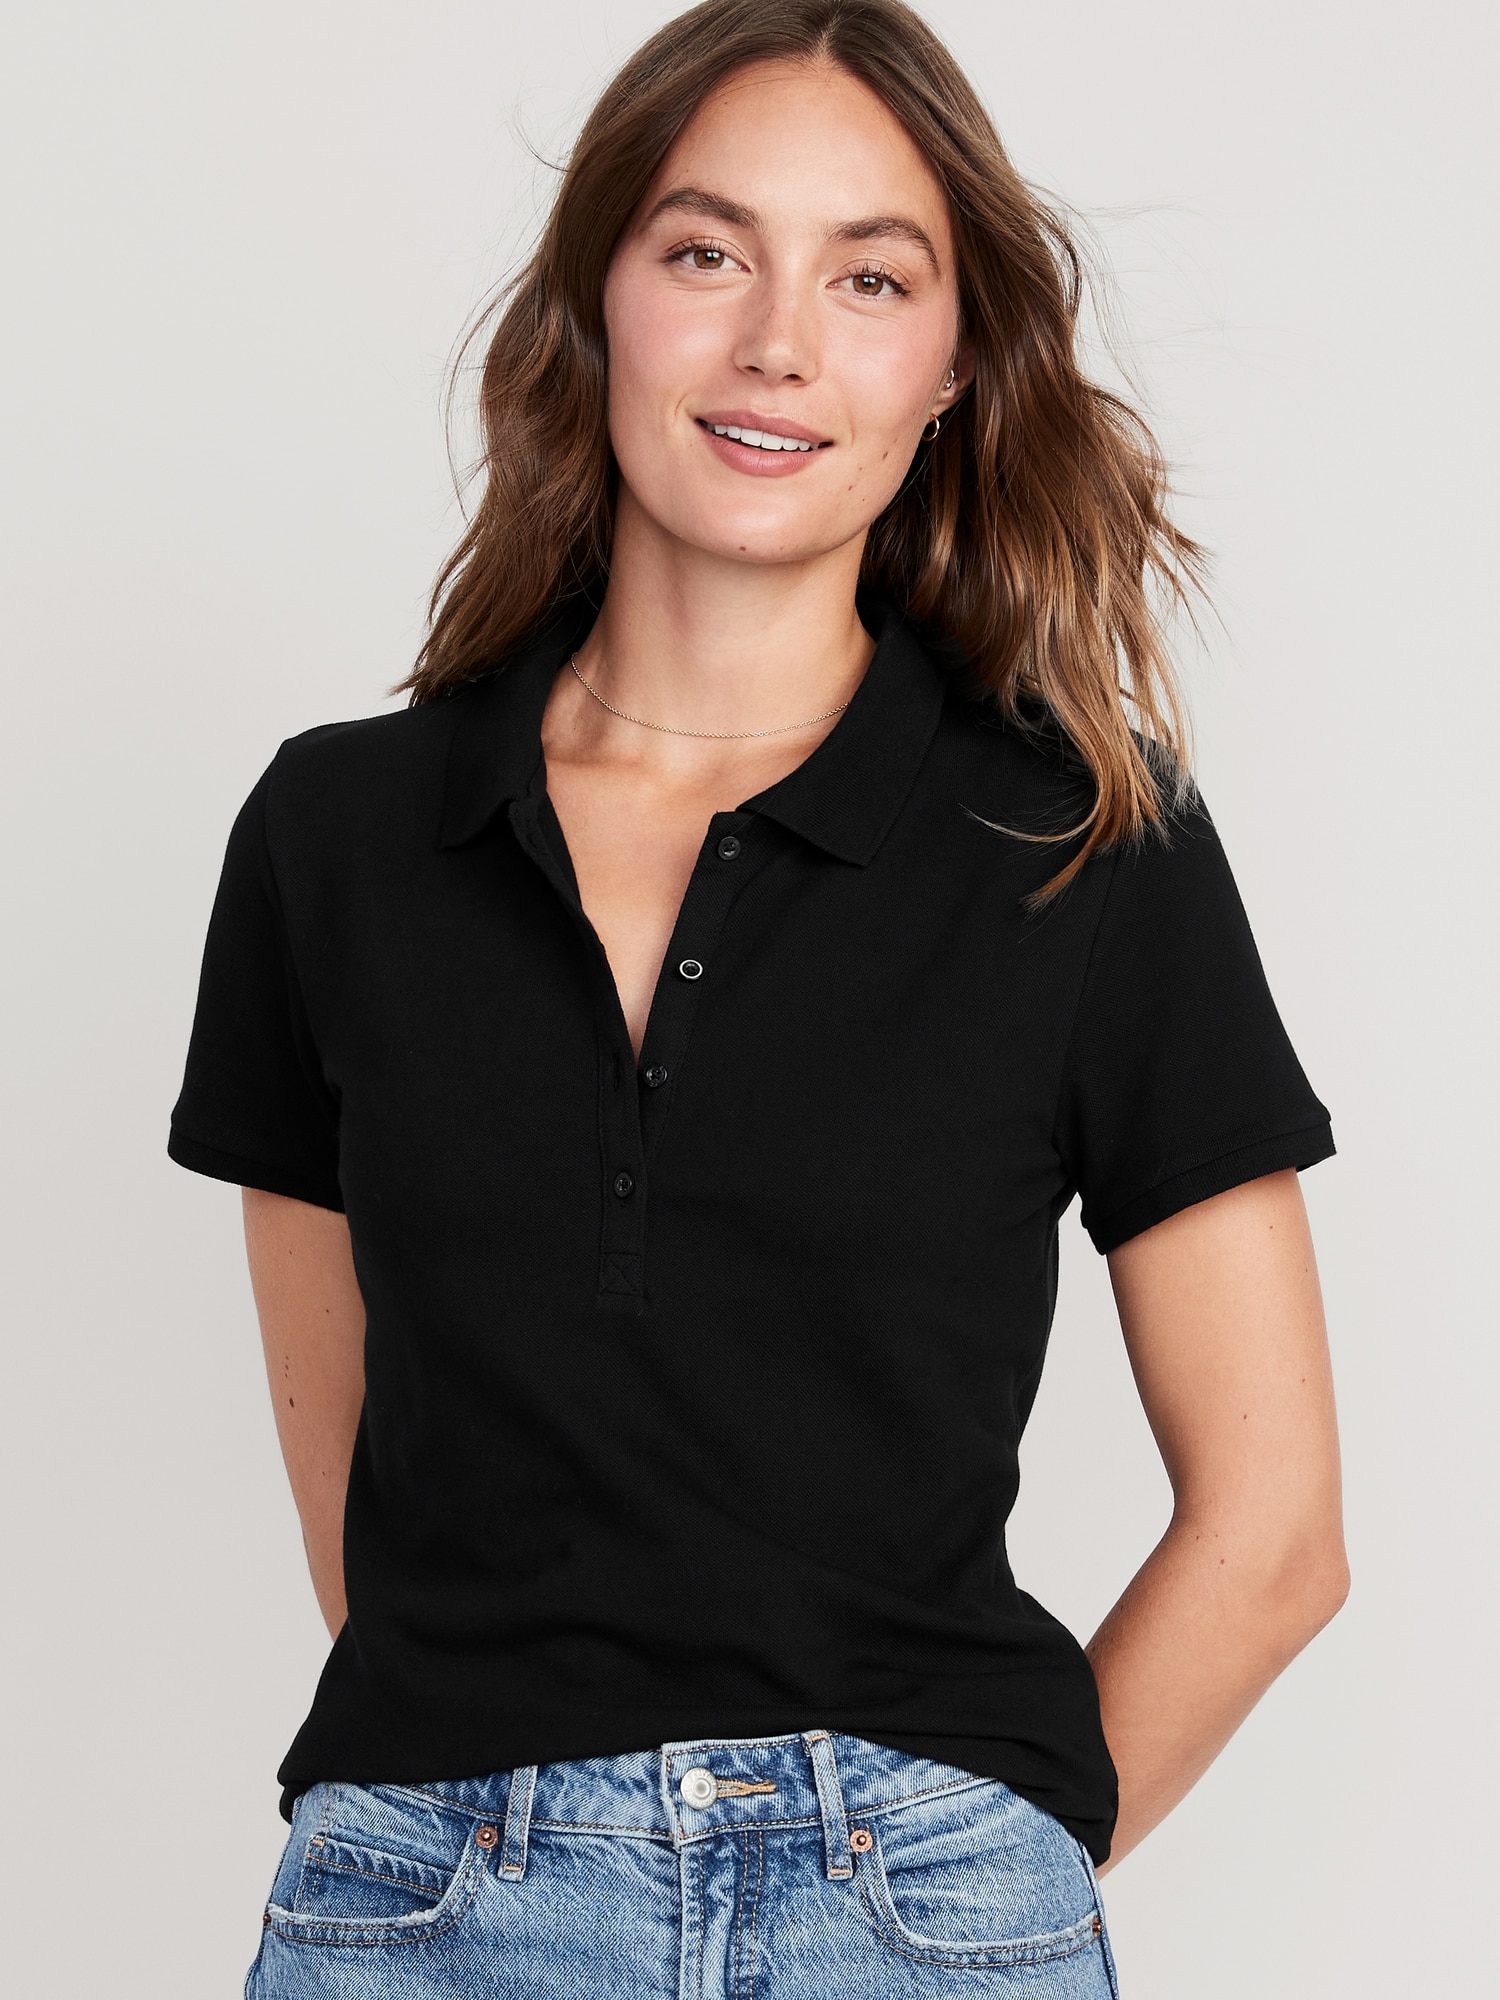 Old Navy Uniform Pique Polo Shirt for Women black. 1